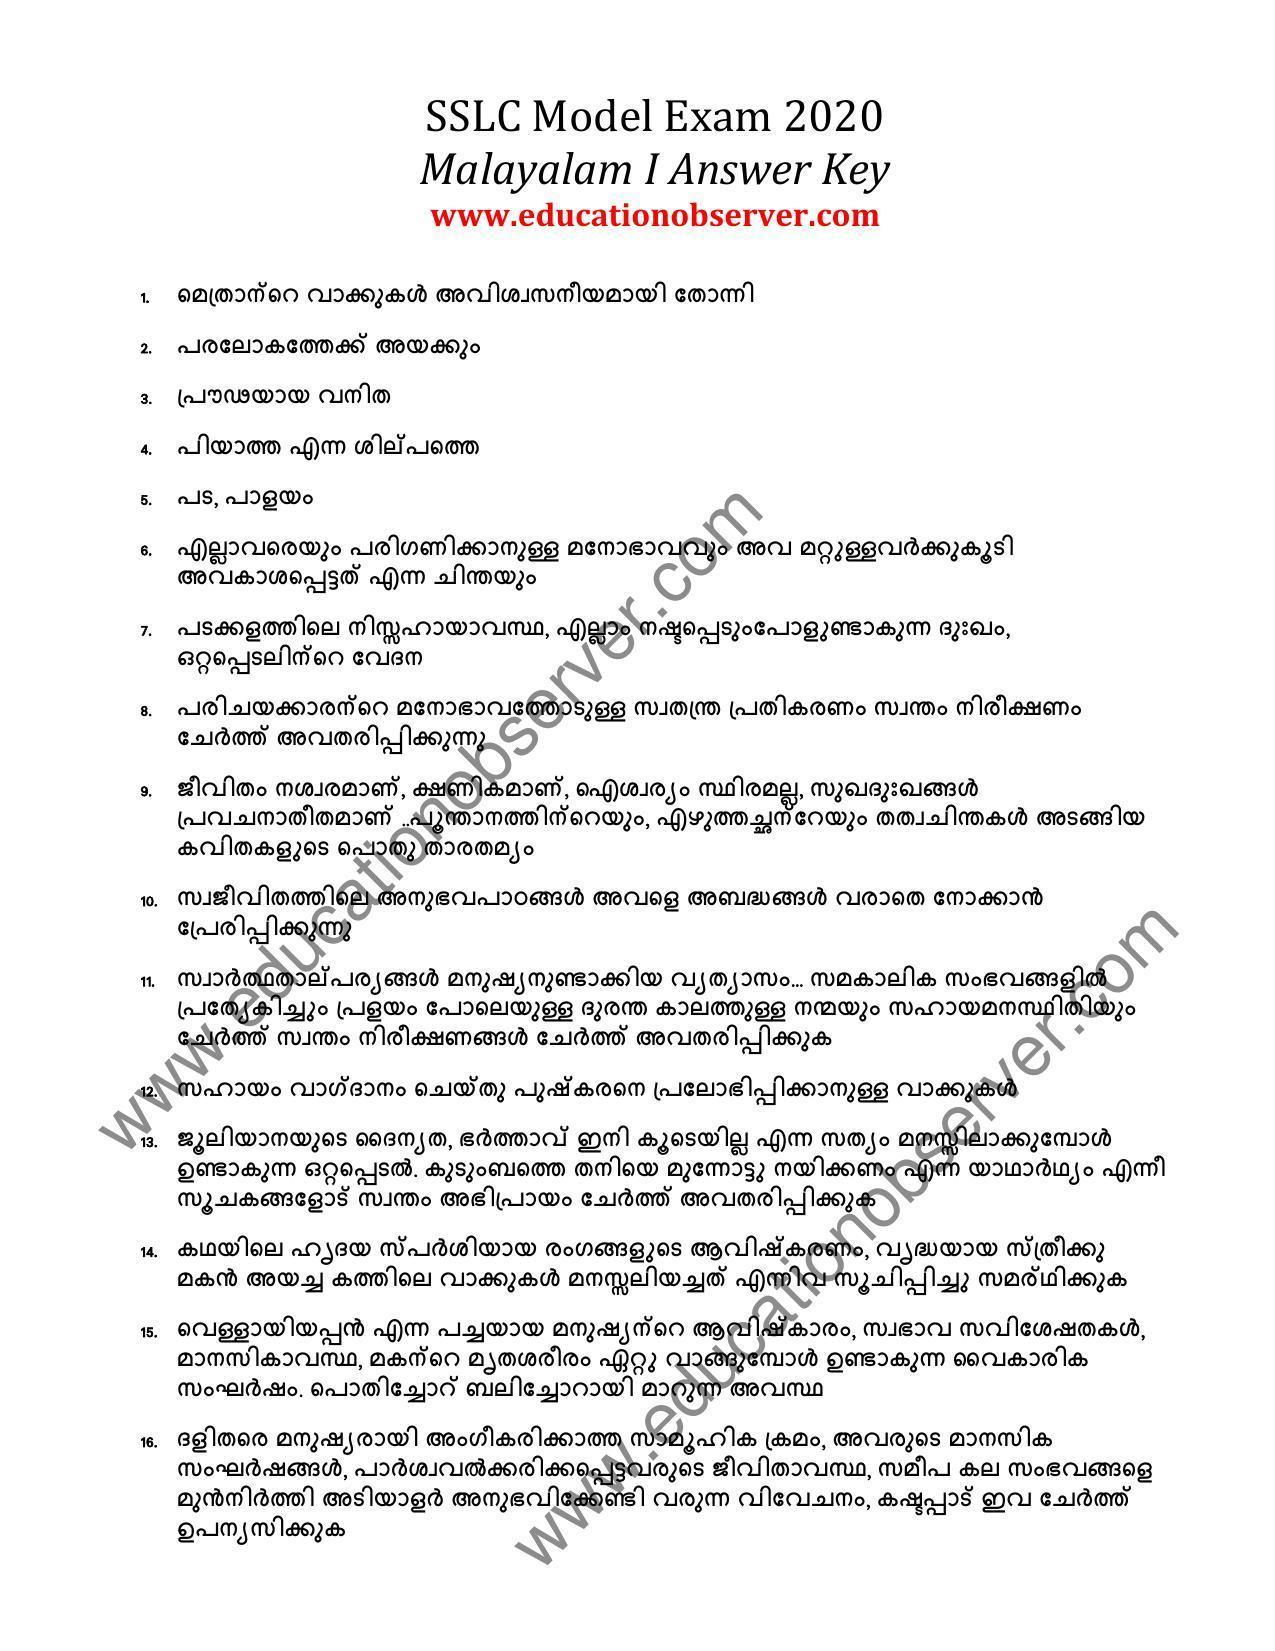 Kerala SSLC 2020 Malayalam I Model Answer Key. - Page 1